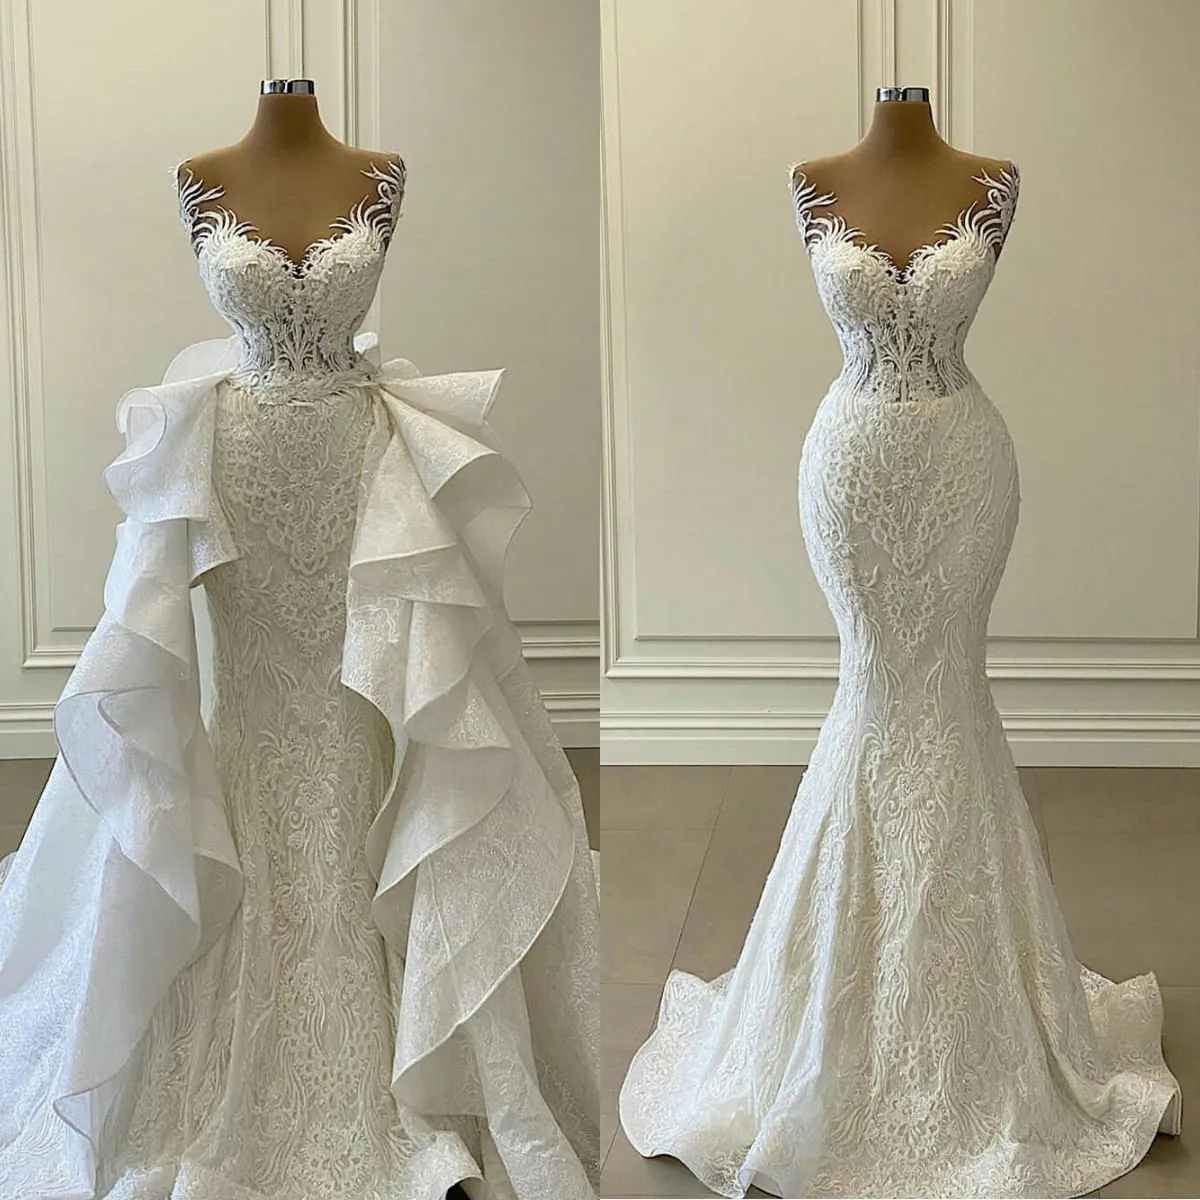 Mermaid Wedding White Dresses with Detachable Train Ruffles Lace Appliqued Bridal Gowns Plus Size Vestidos De Novia